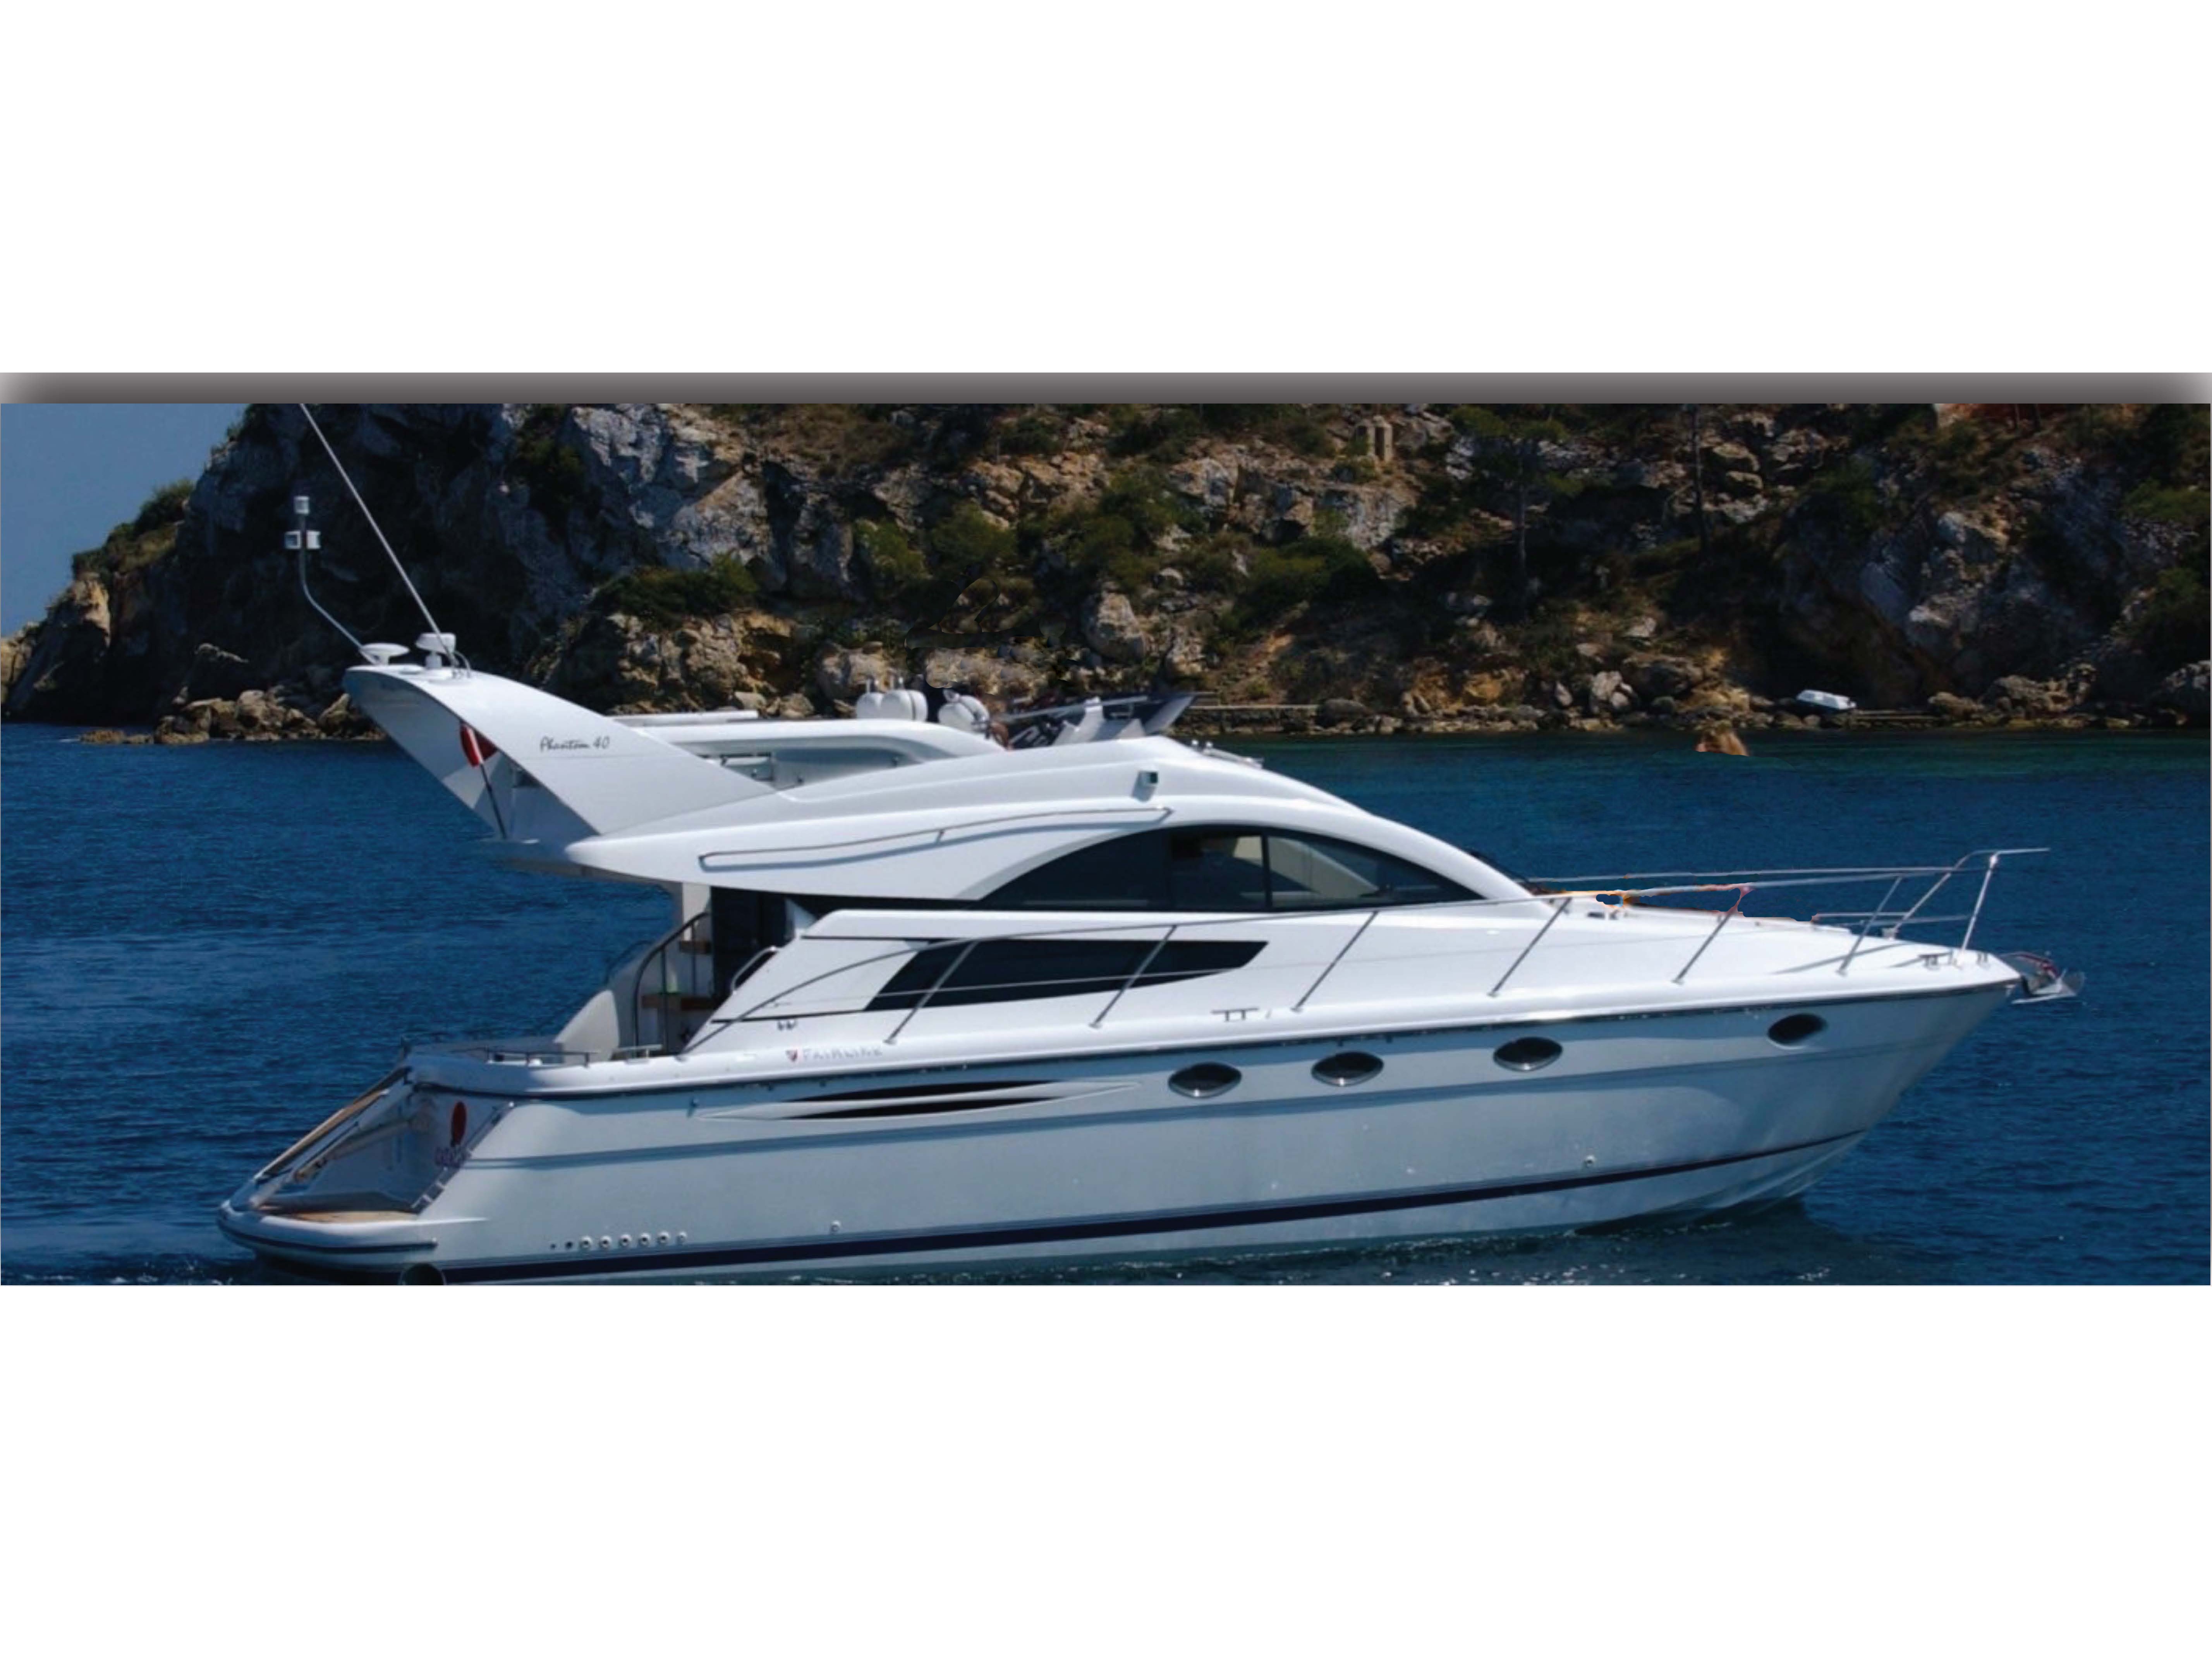 Phantom 43 - Yacht Charter Mykonos & Boat hire in Greece Cyclades Islands Mykonos Mykonos 2